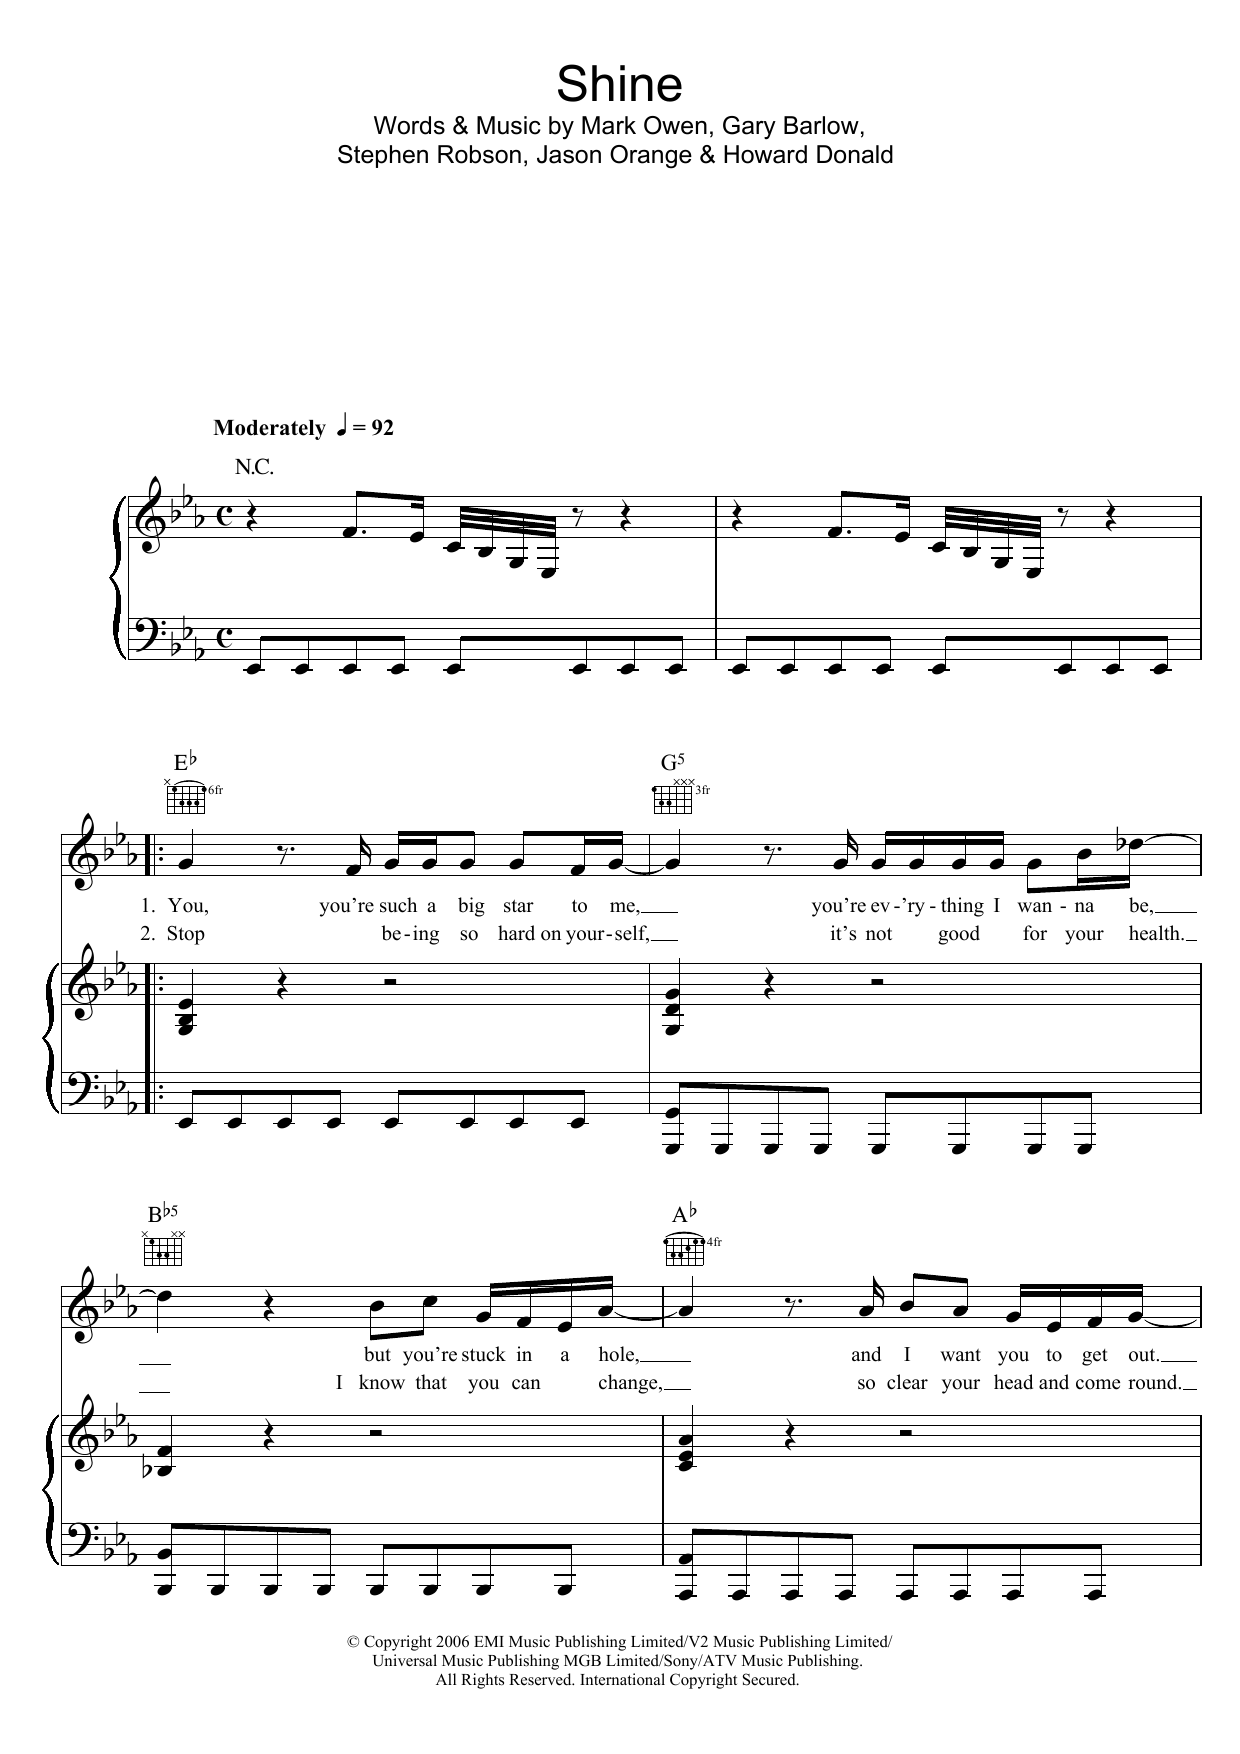 Take That Shine Sheet Music Notes & Chords for Keyboard - Download or Print PDF